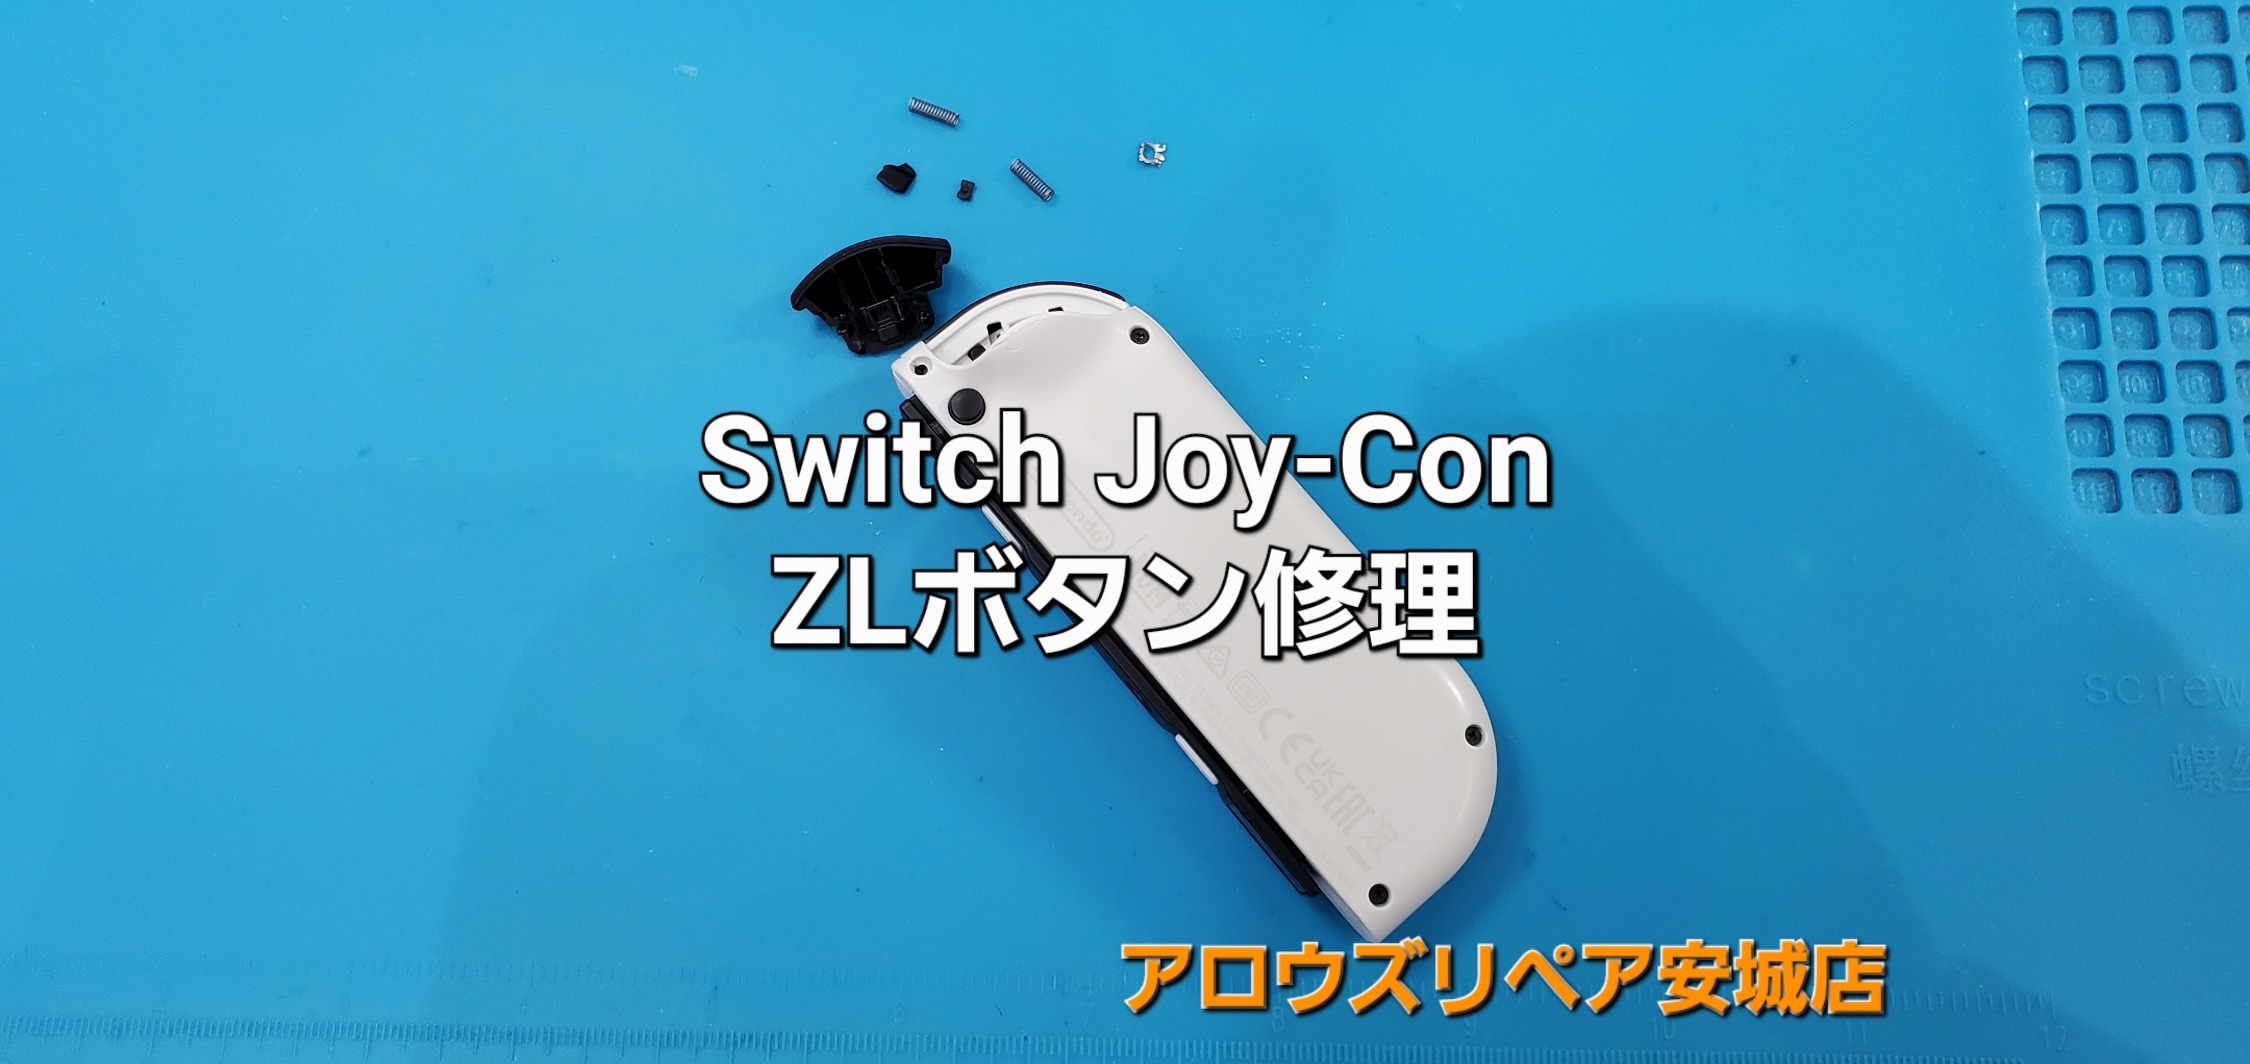 岡崎市よりご来店、Nintendo Switch Joy-Con ZLボタン修理のご紹介。|安城駅徒歩3分|iPhone・Switch・iPad修理ならアロウズリペア安城がおすすめ！JR安城駅から徒歩3分、データそのまま即日修理、Switch修理もお任せ下さい。お客様のお悩み解決致します。